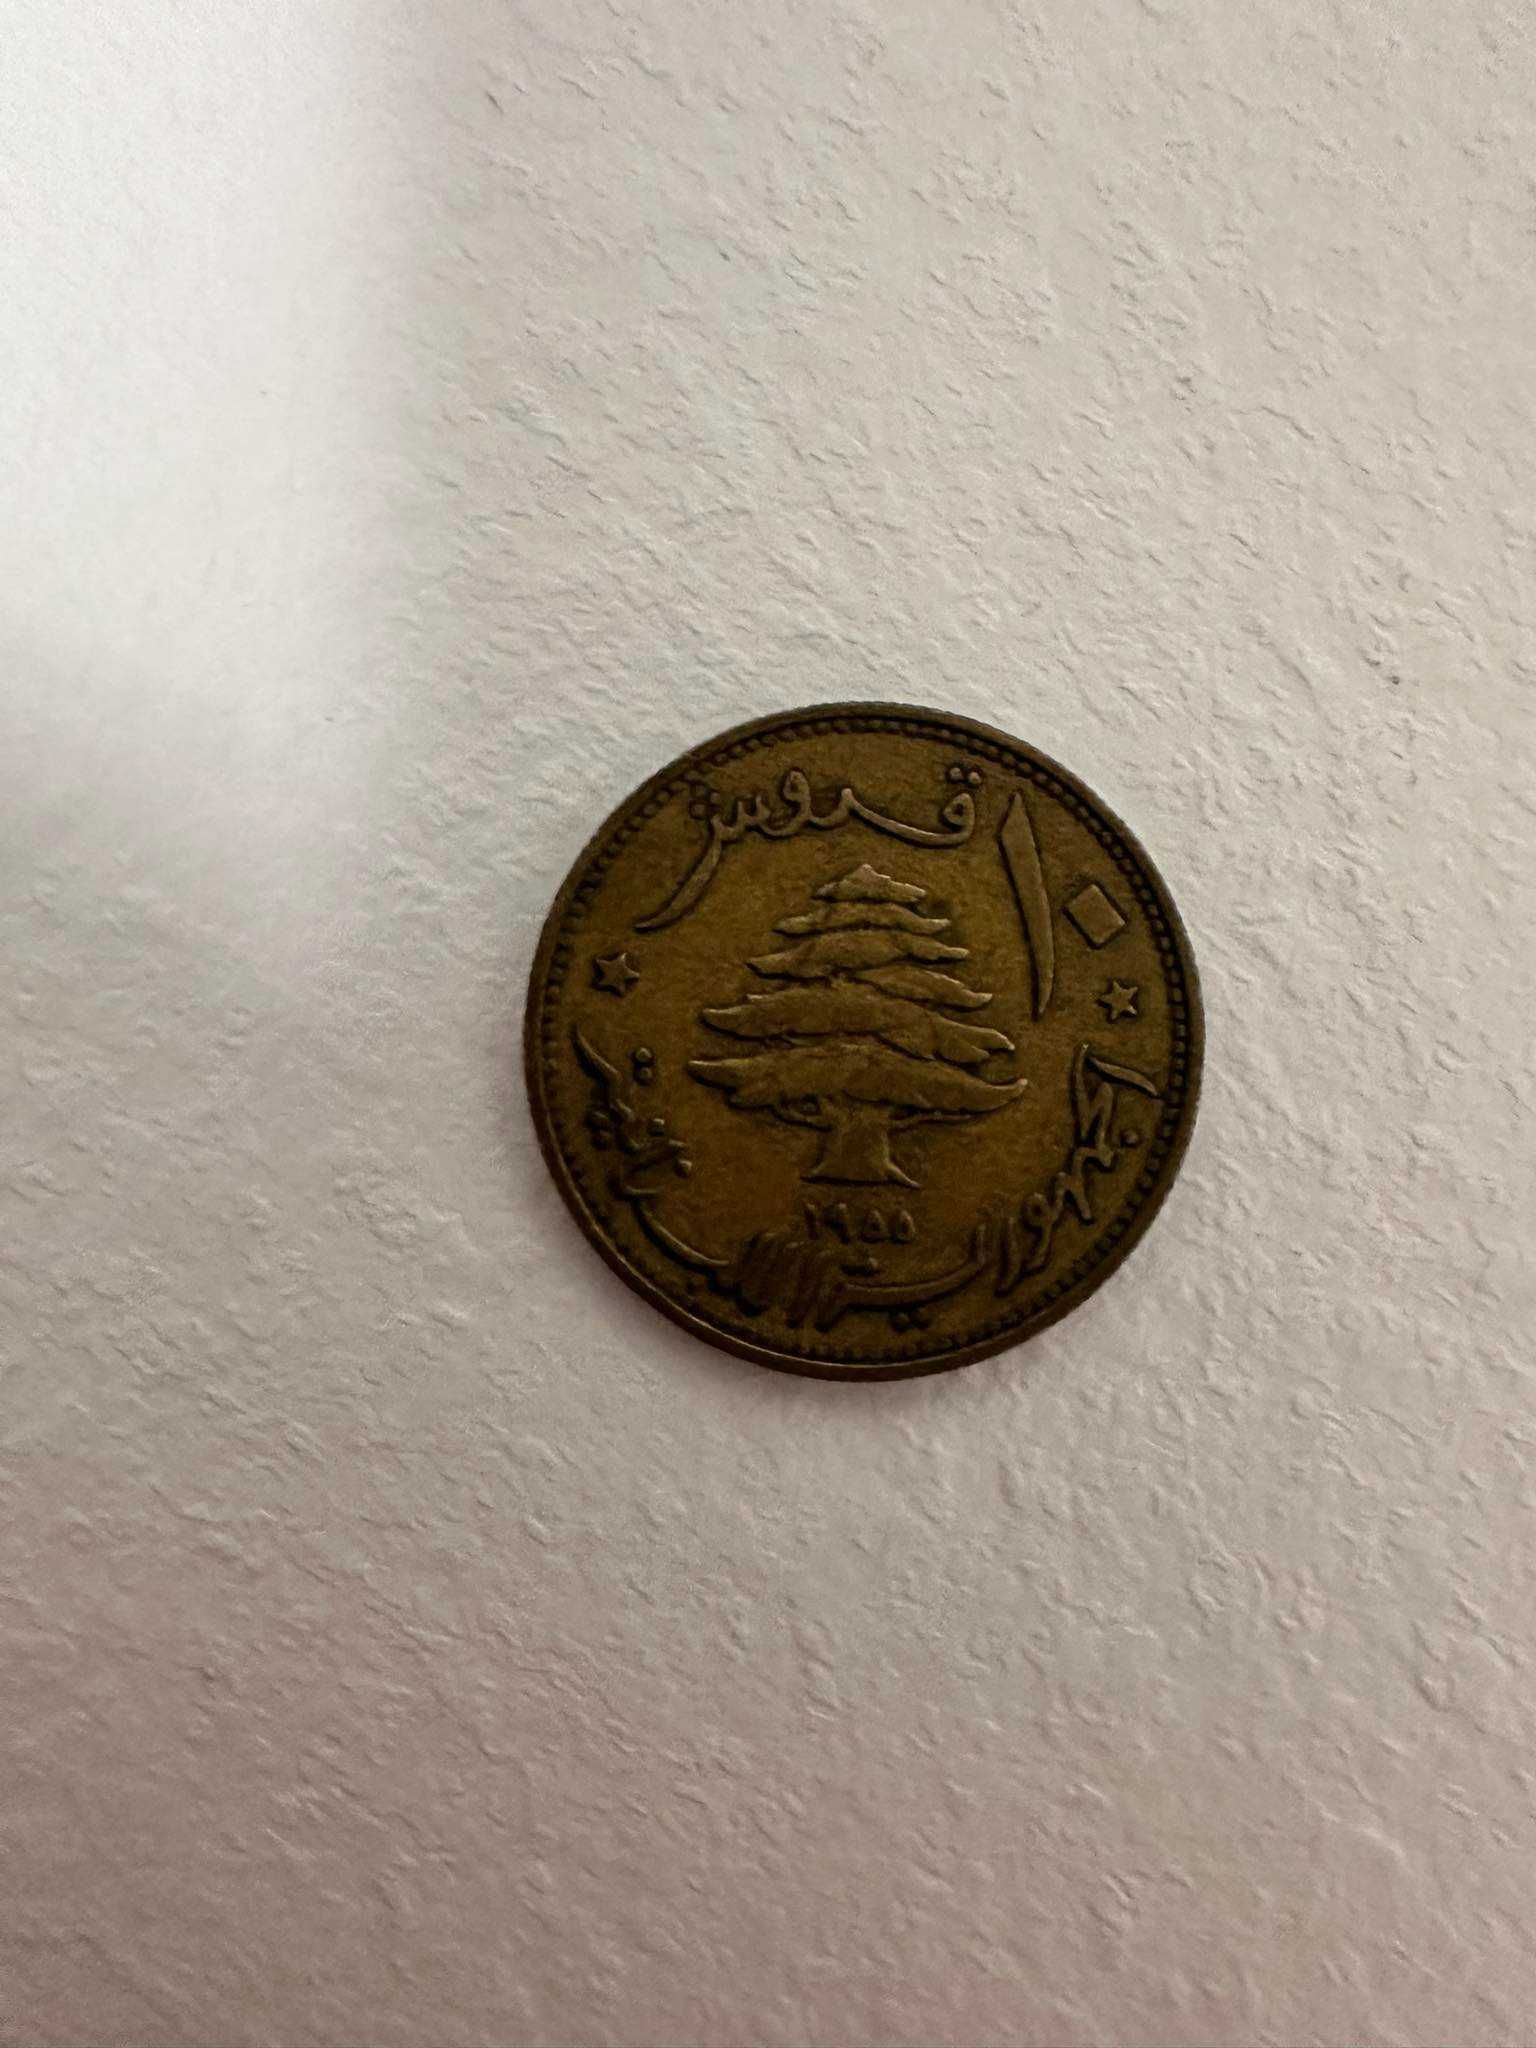 Monede vechi in stare buna